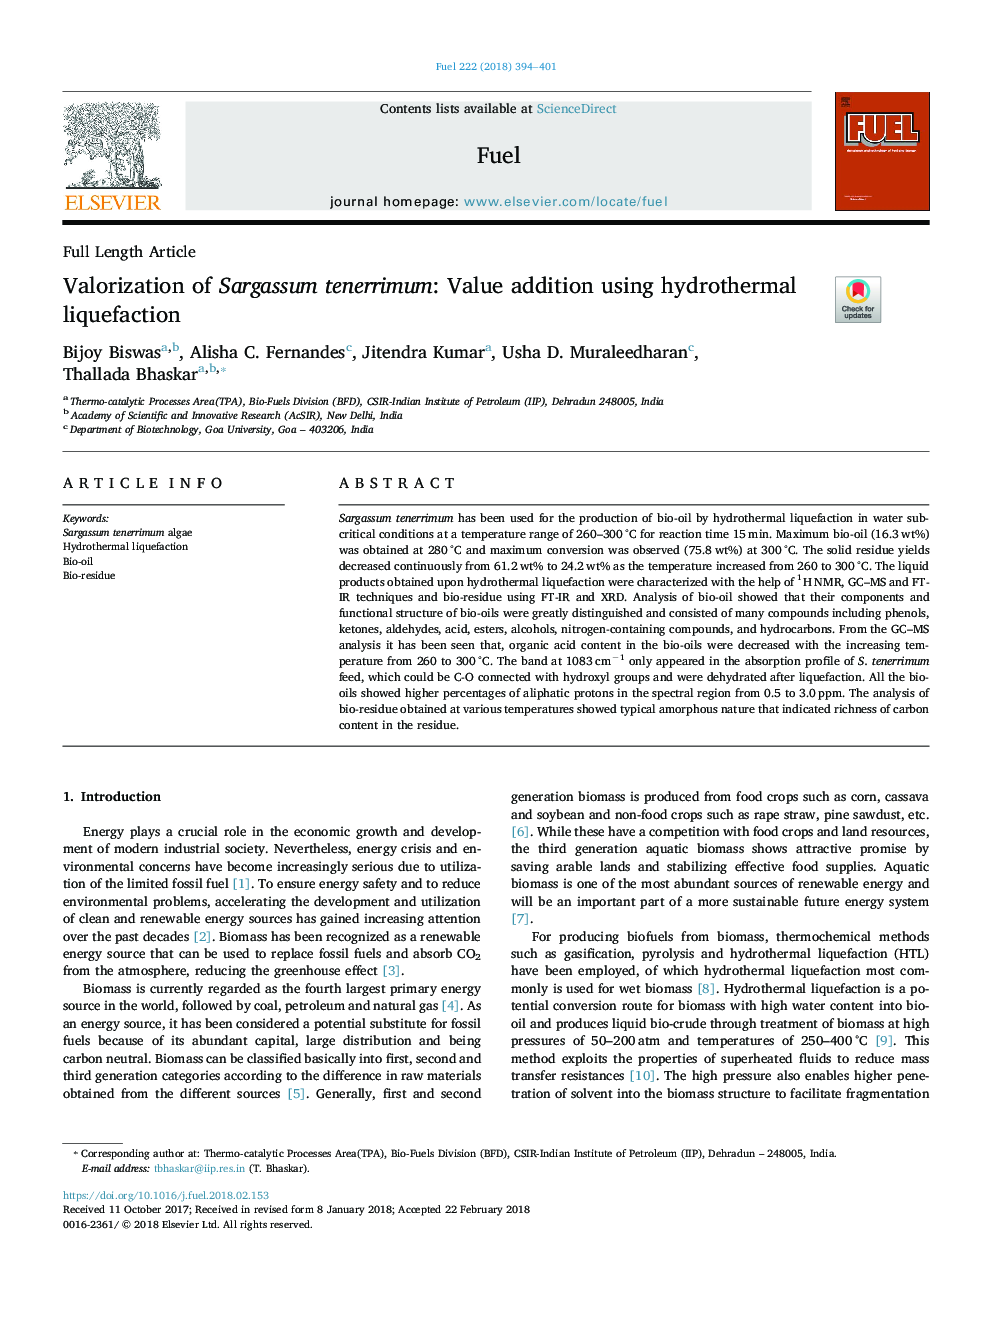 Valorization of Sargassum tenerrimum: Value addition using hydrothermal liquefaction